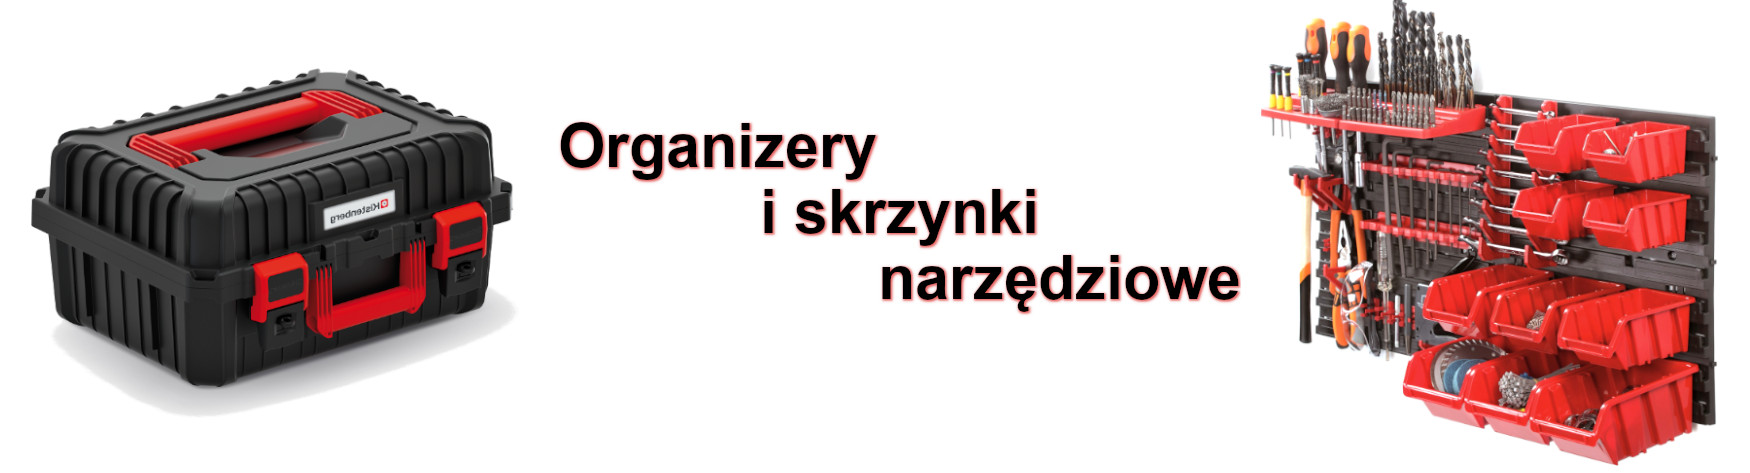 https://nabudowe24.pl/organizery-skrzynki-narzedziowe-tablice-warsztatowe,487.html